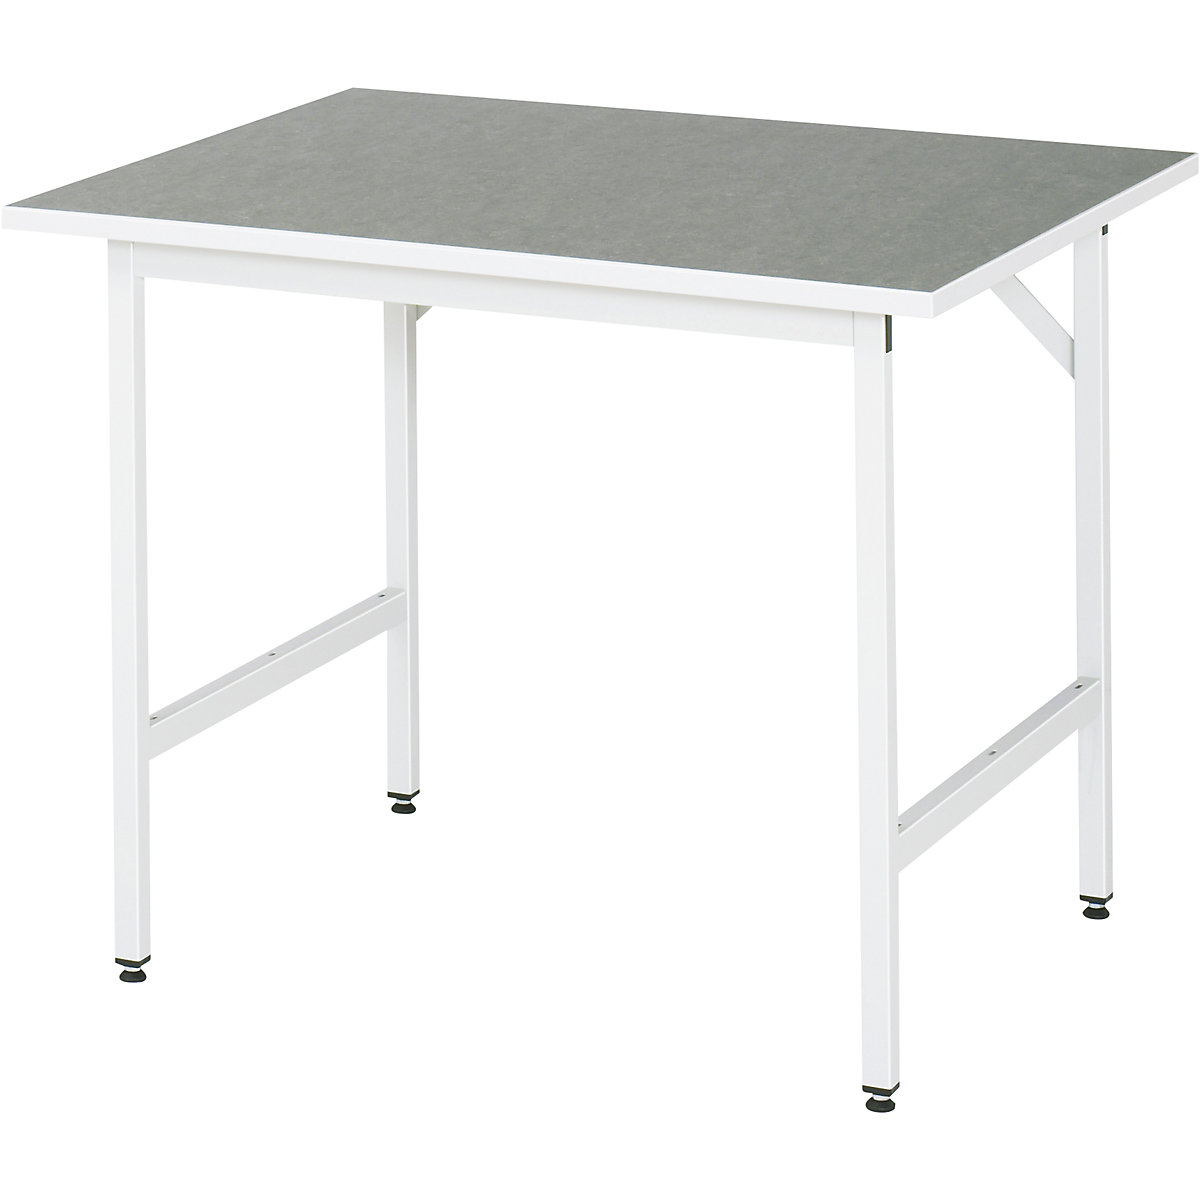 Munkaasztal, állítható magasságú – RAU, 800 – 850 mm, linóleum lap, szé x mé 1000 x 800 mm, világosszürke-10